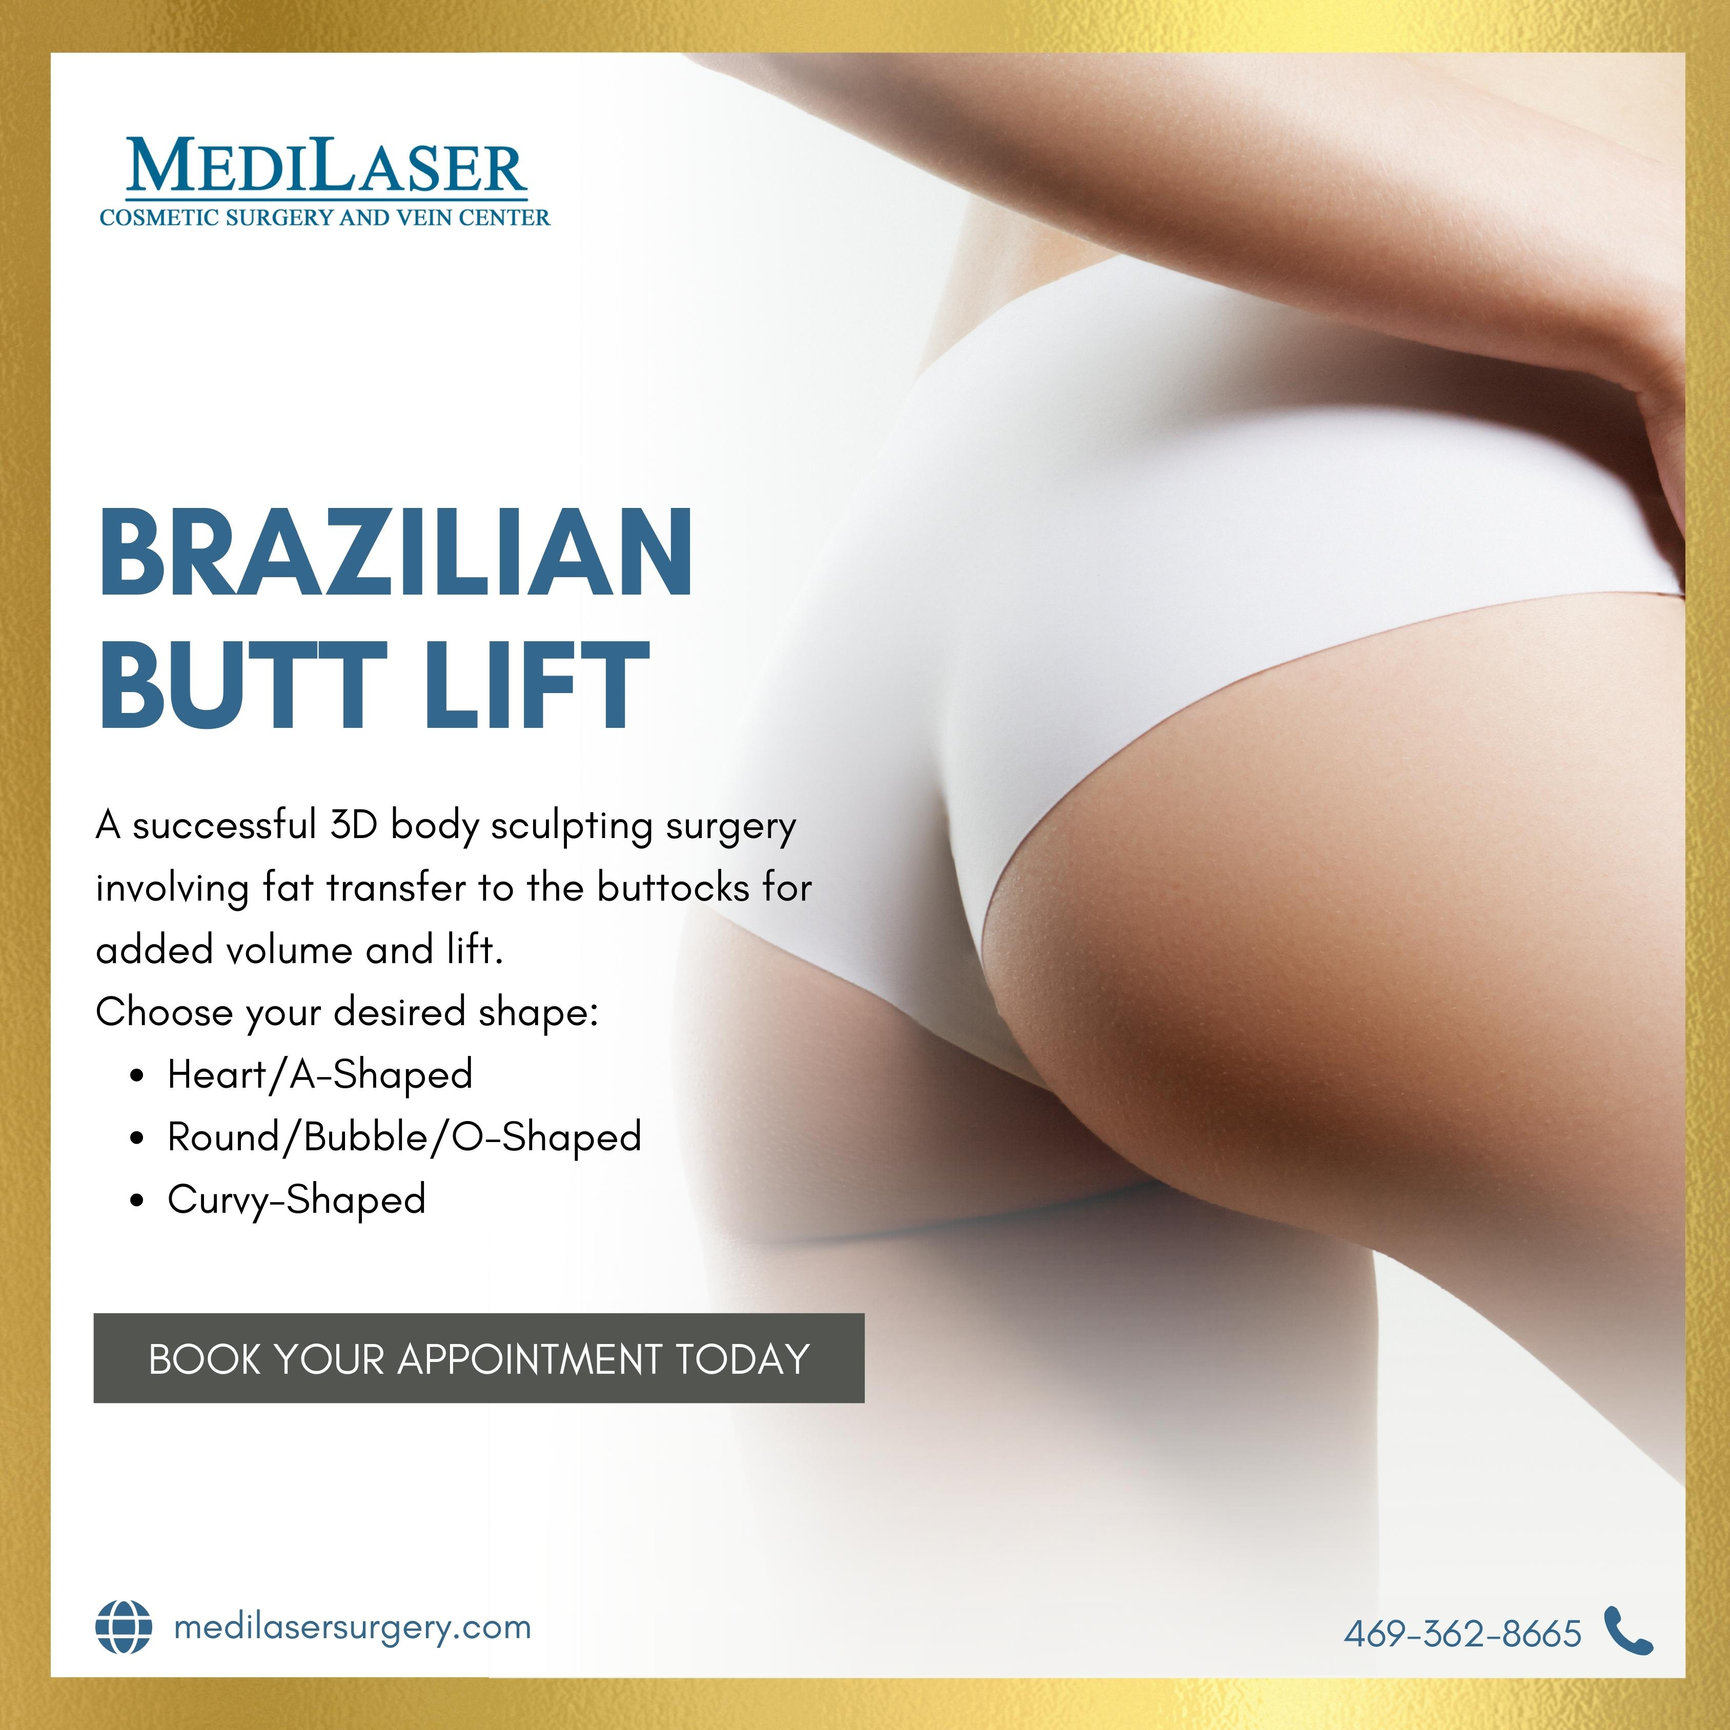 BBL Shapes: Common Brazilian Butt Lift Shapes